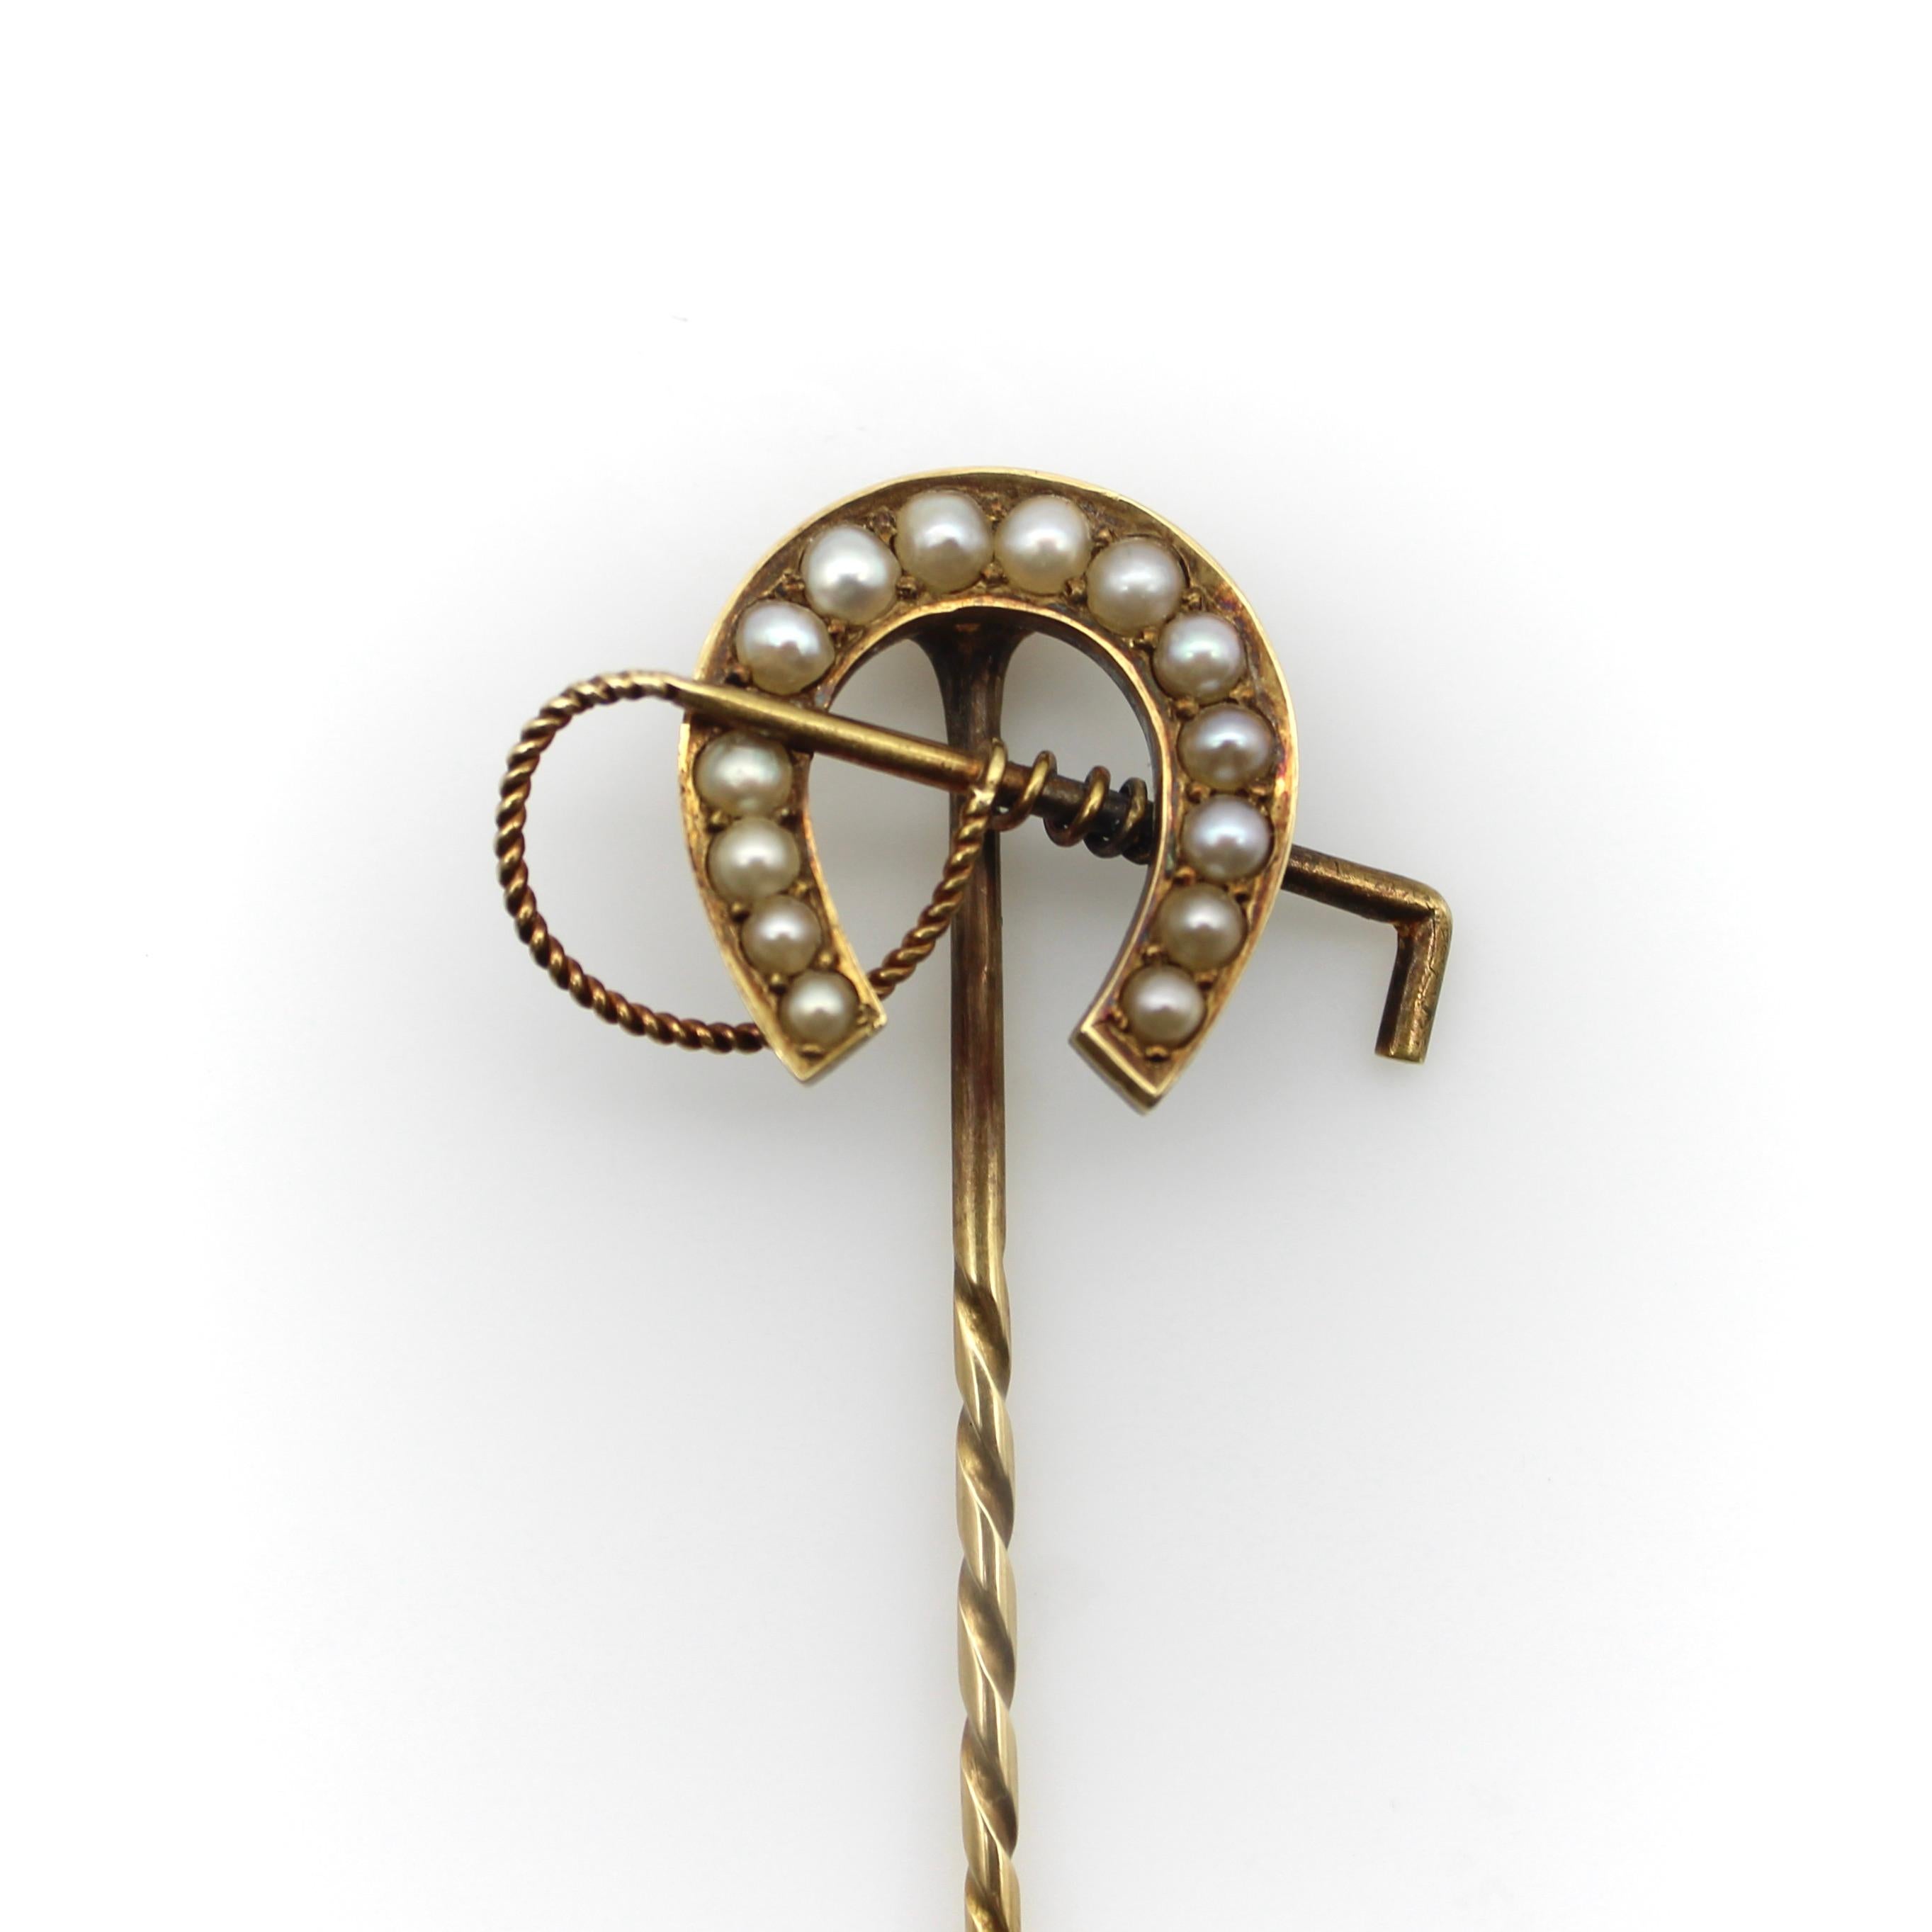 Cette épingle décorative édouardienne élaborée en or jaune 15 carats présente un fer à cheval et une cravache. Le fer à cheval porte-bonheur comporte 14 perles qui s'insèrent bien à l'intérieur, comme pour ajouter une lueur de bonne fortune. Chaque